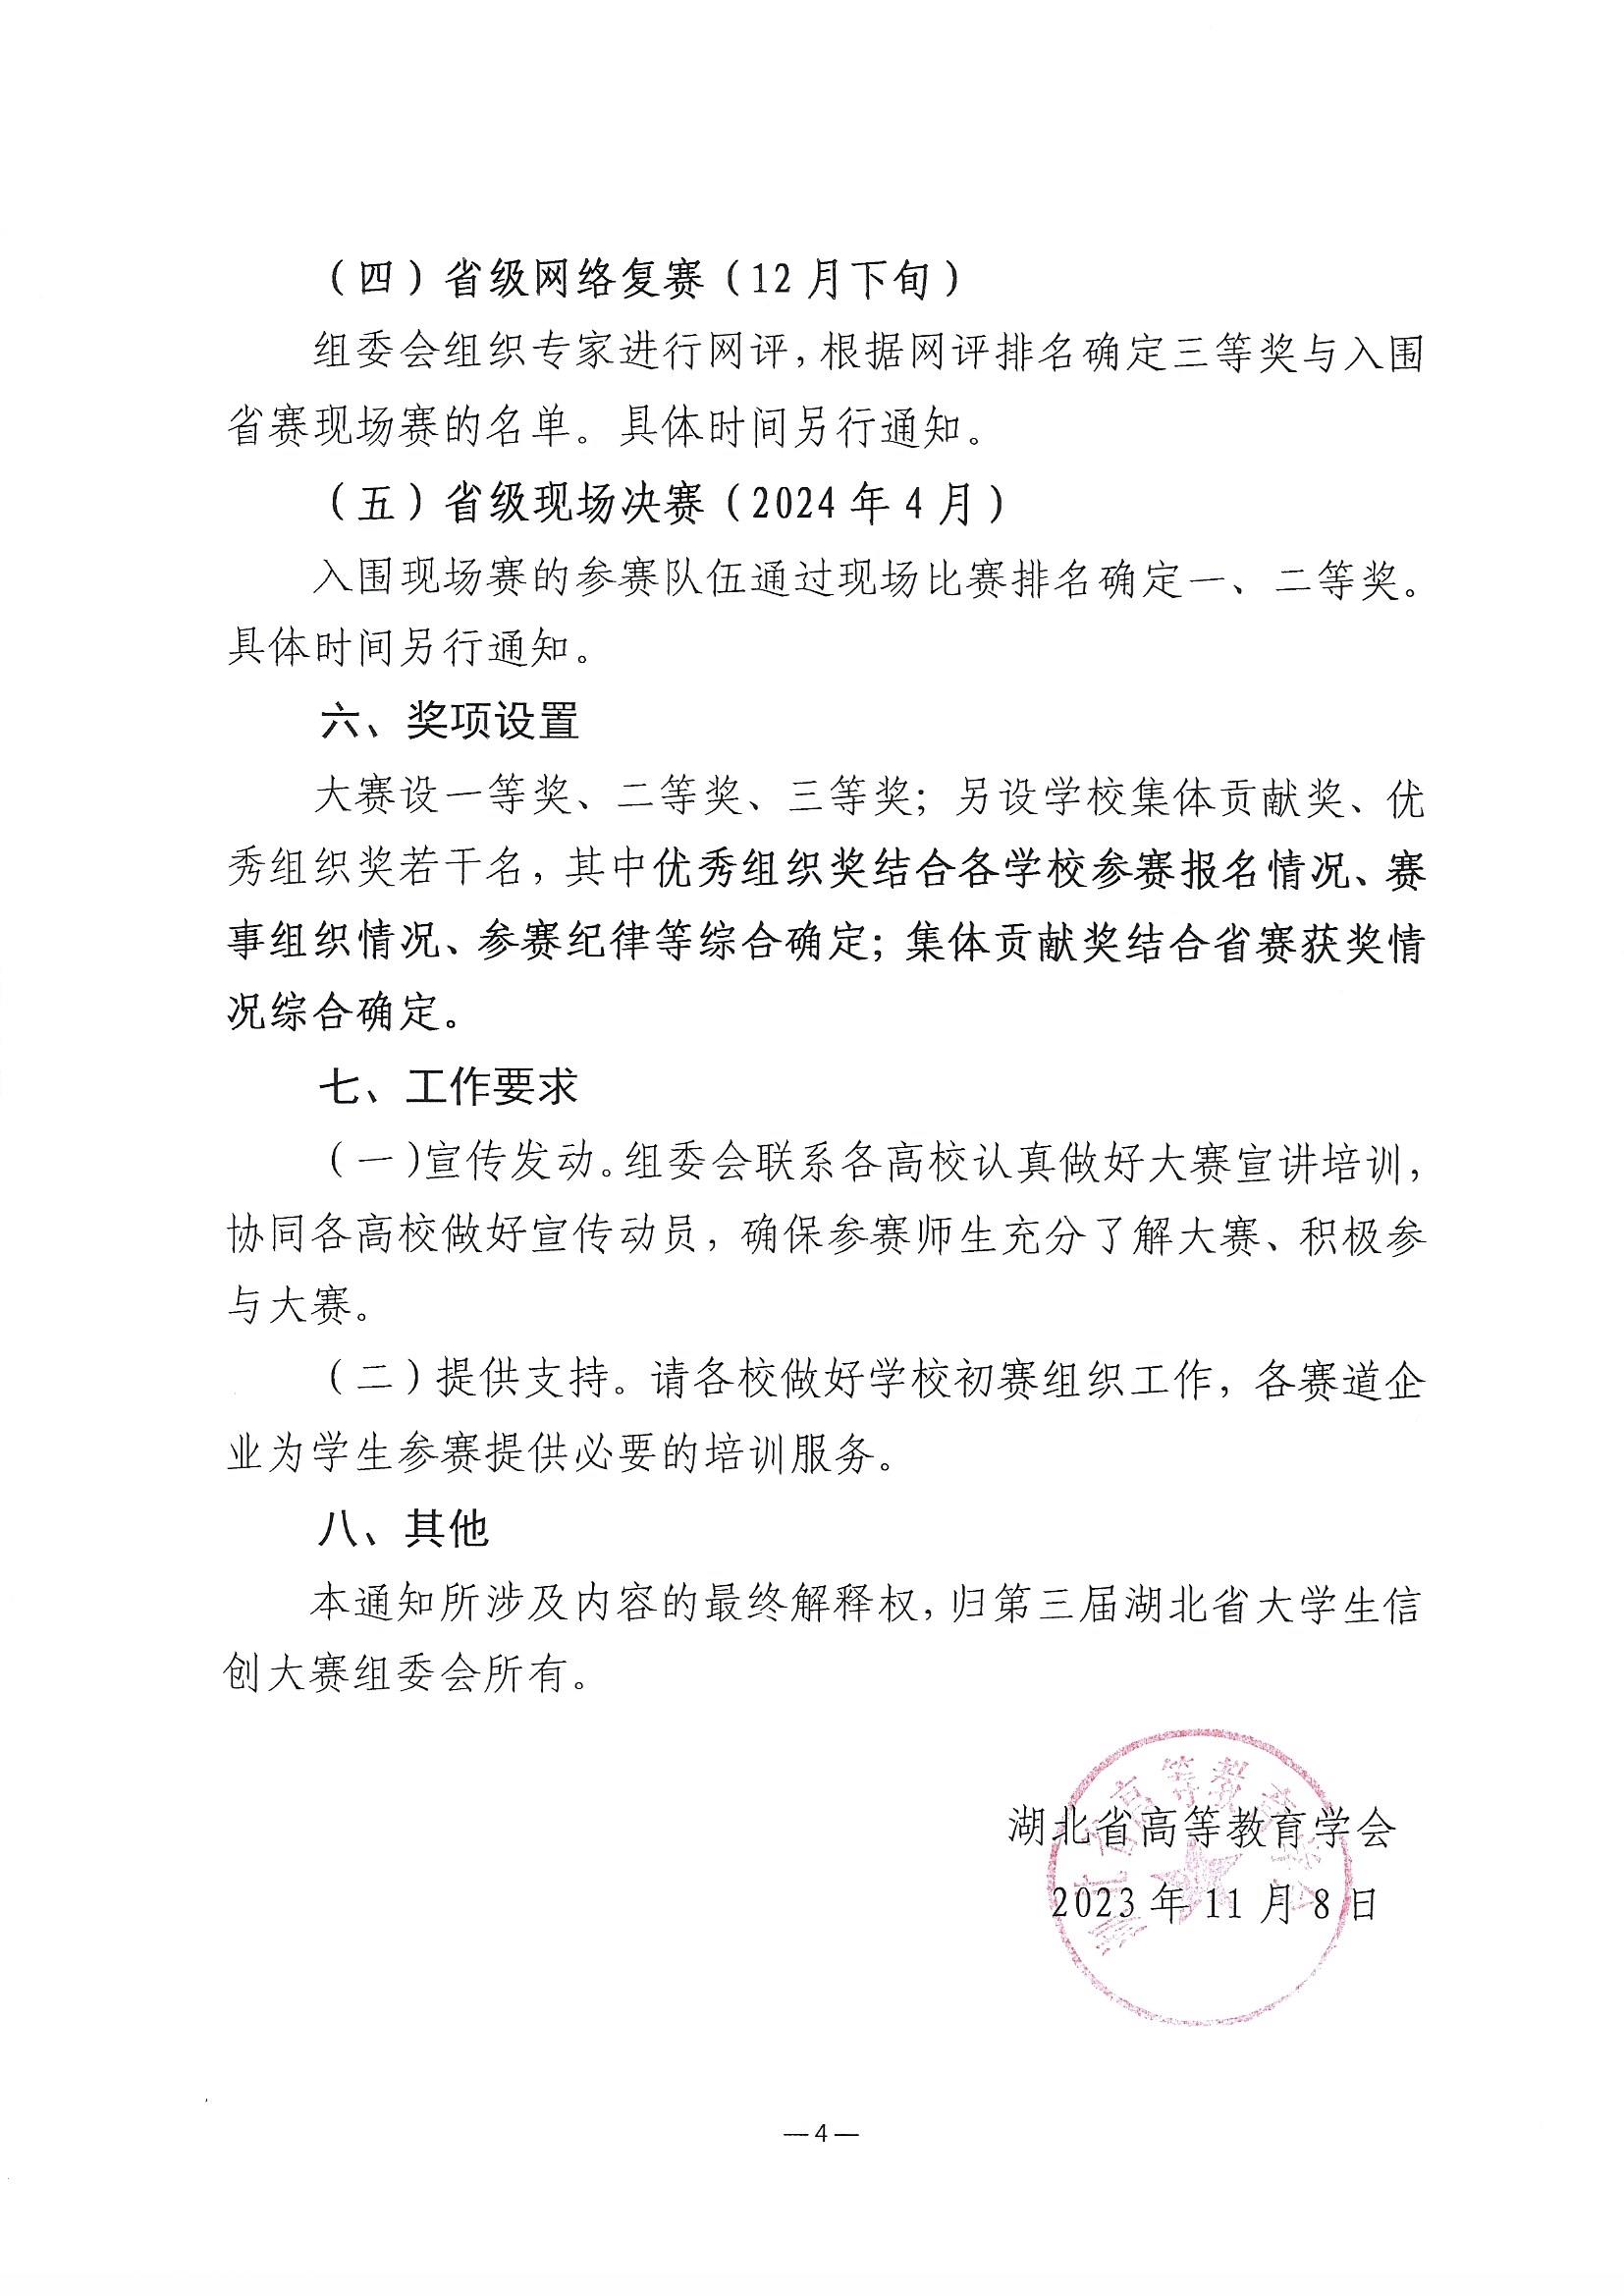 2023.11.9关于举办第三届湖北省大学生信创大赛的通知(1)_页面_4.jpg